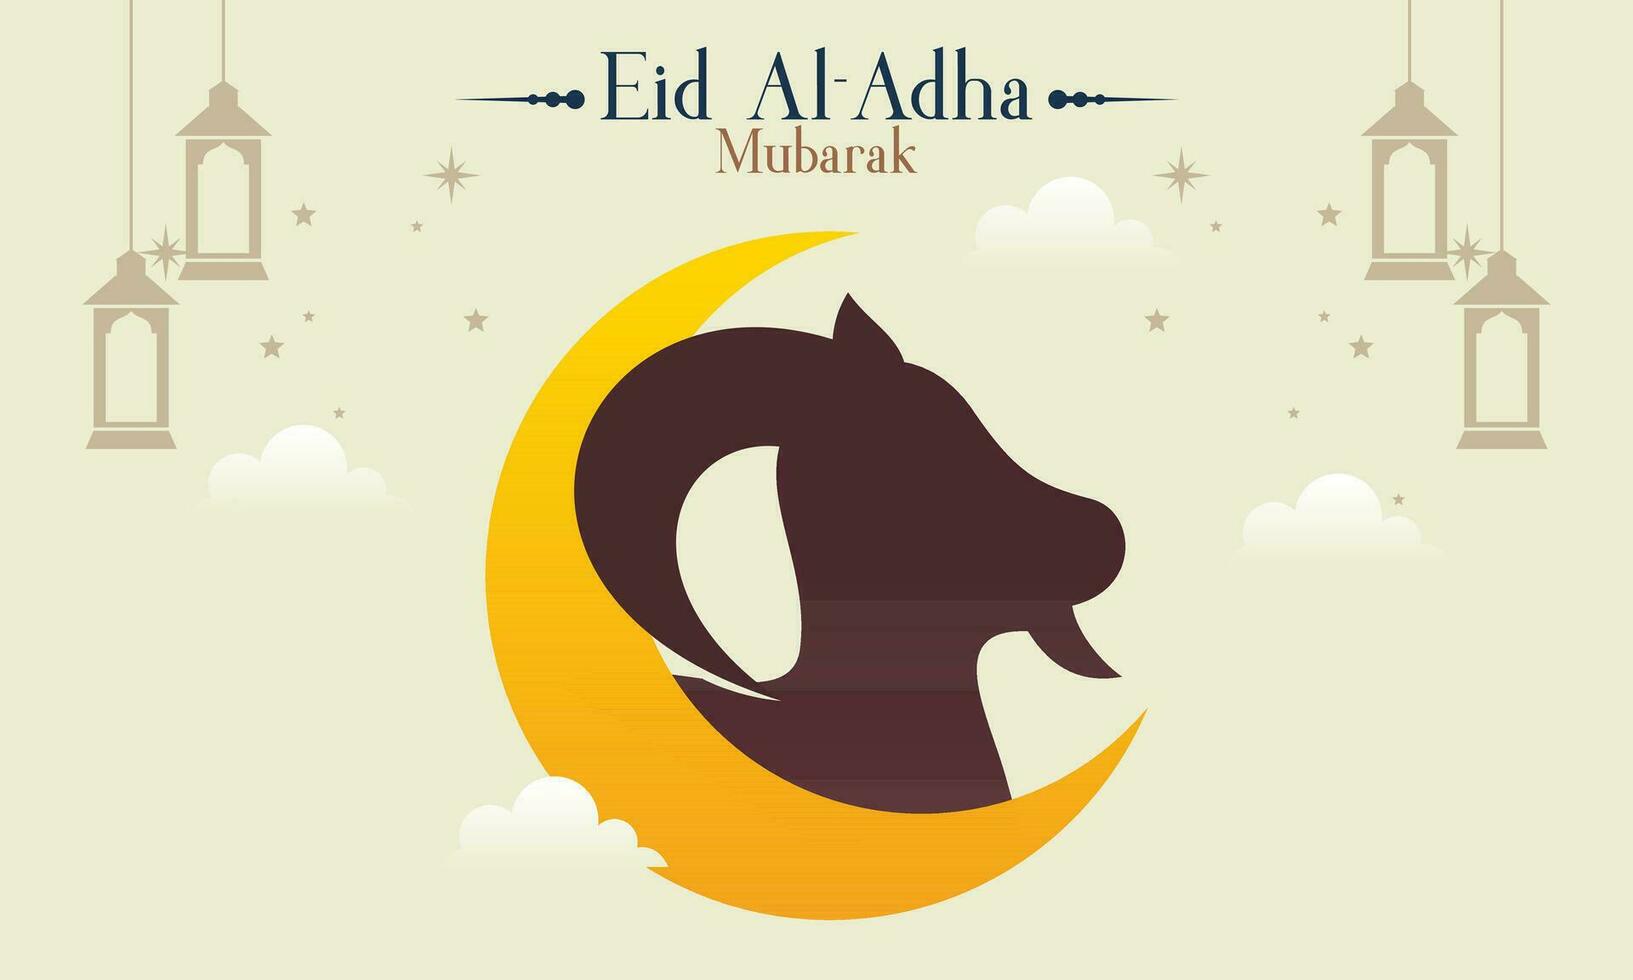 comemoro eid al adha Mubarak islâmico fundo com qurban animais vetor